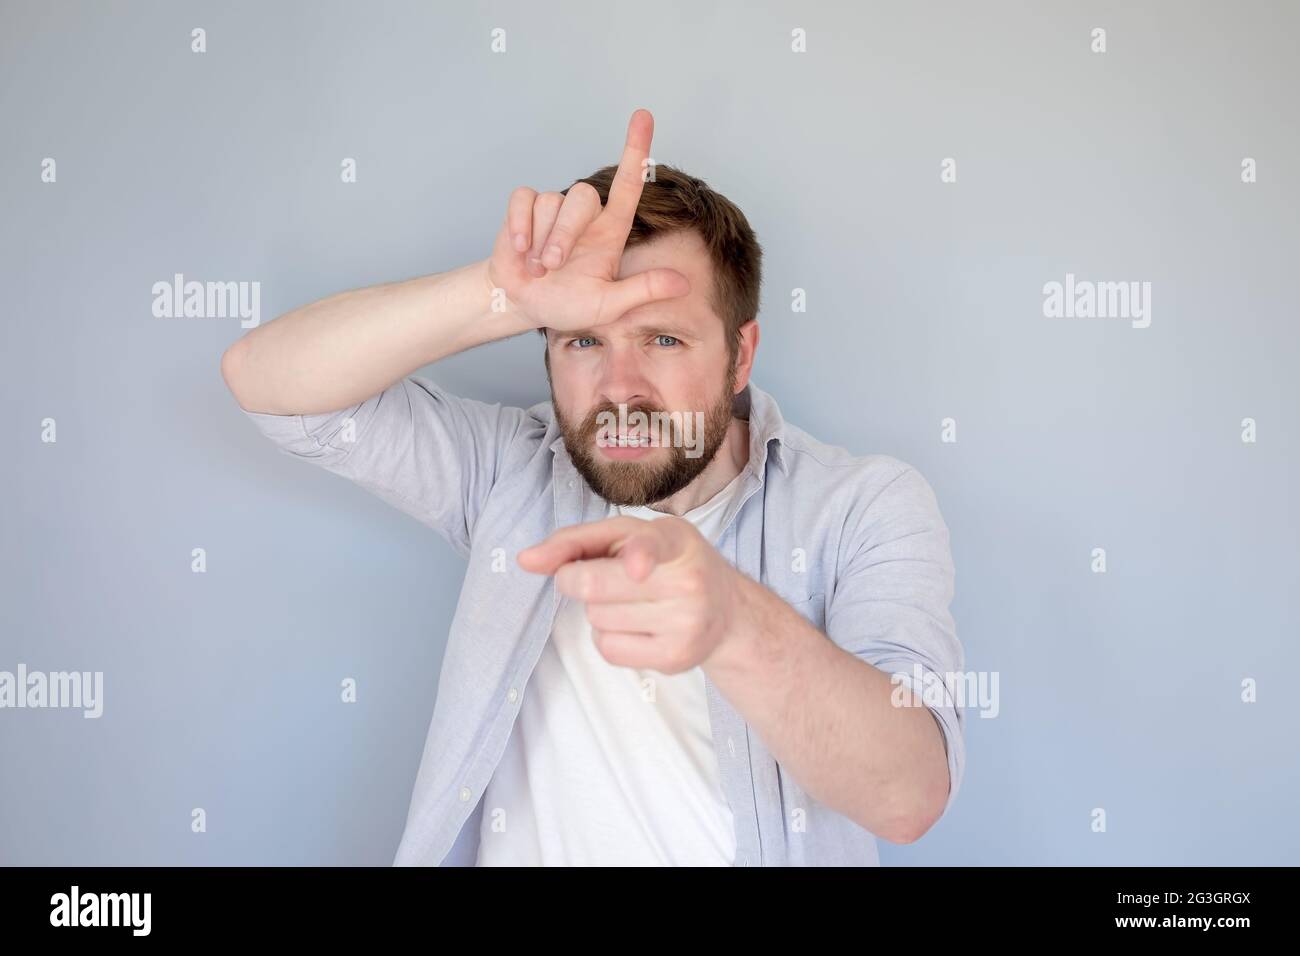 Un hombre caucásico molesto con ropa casual insulta a alguien con un gesto perdedor, dedos en la frente y viciosamente apunta al dedo índice. Foto de stock